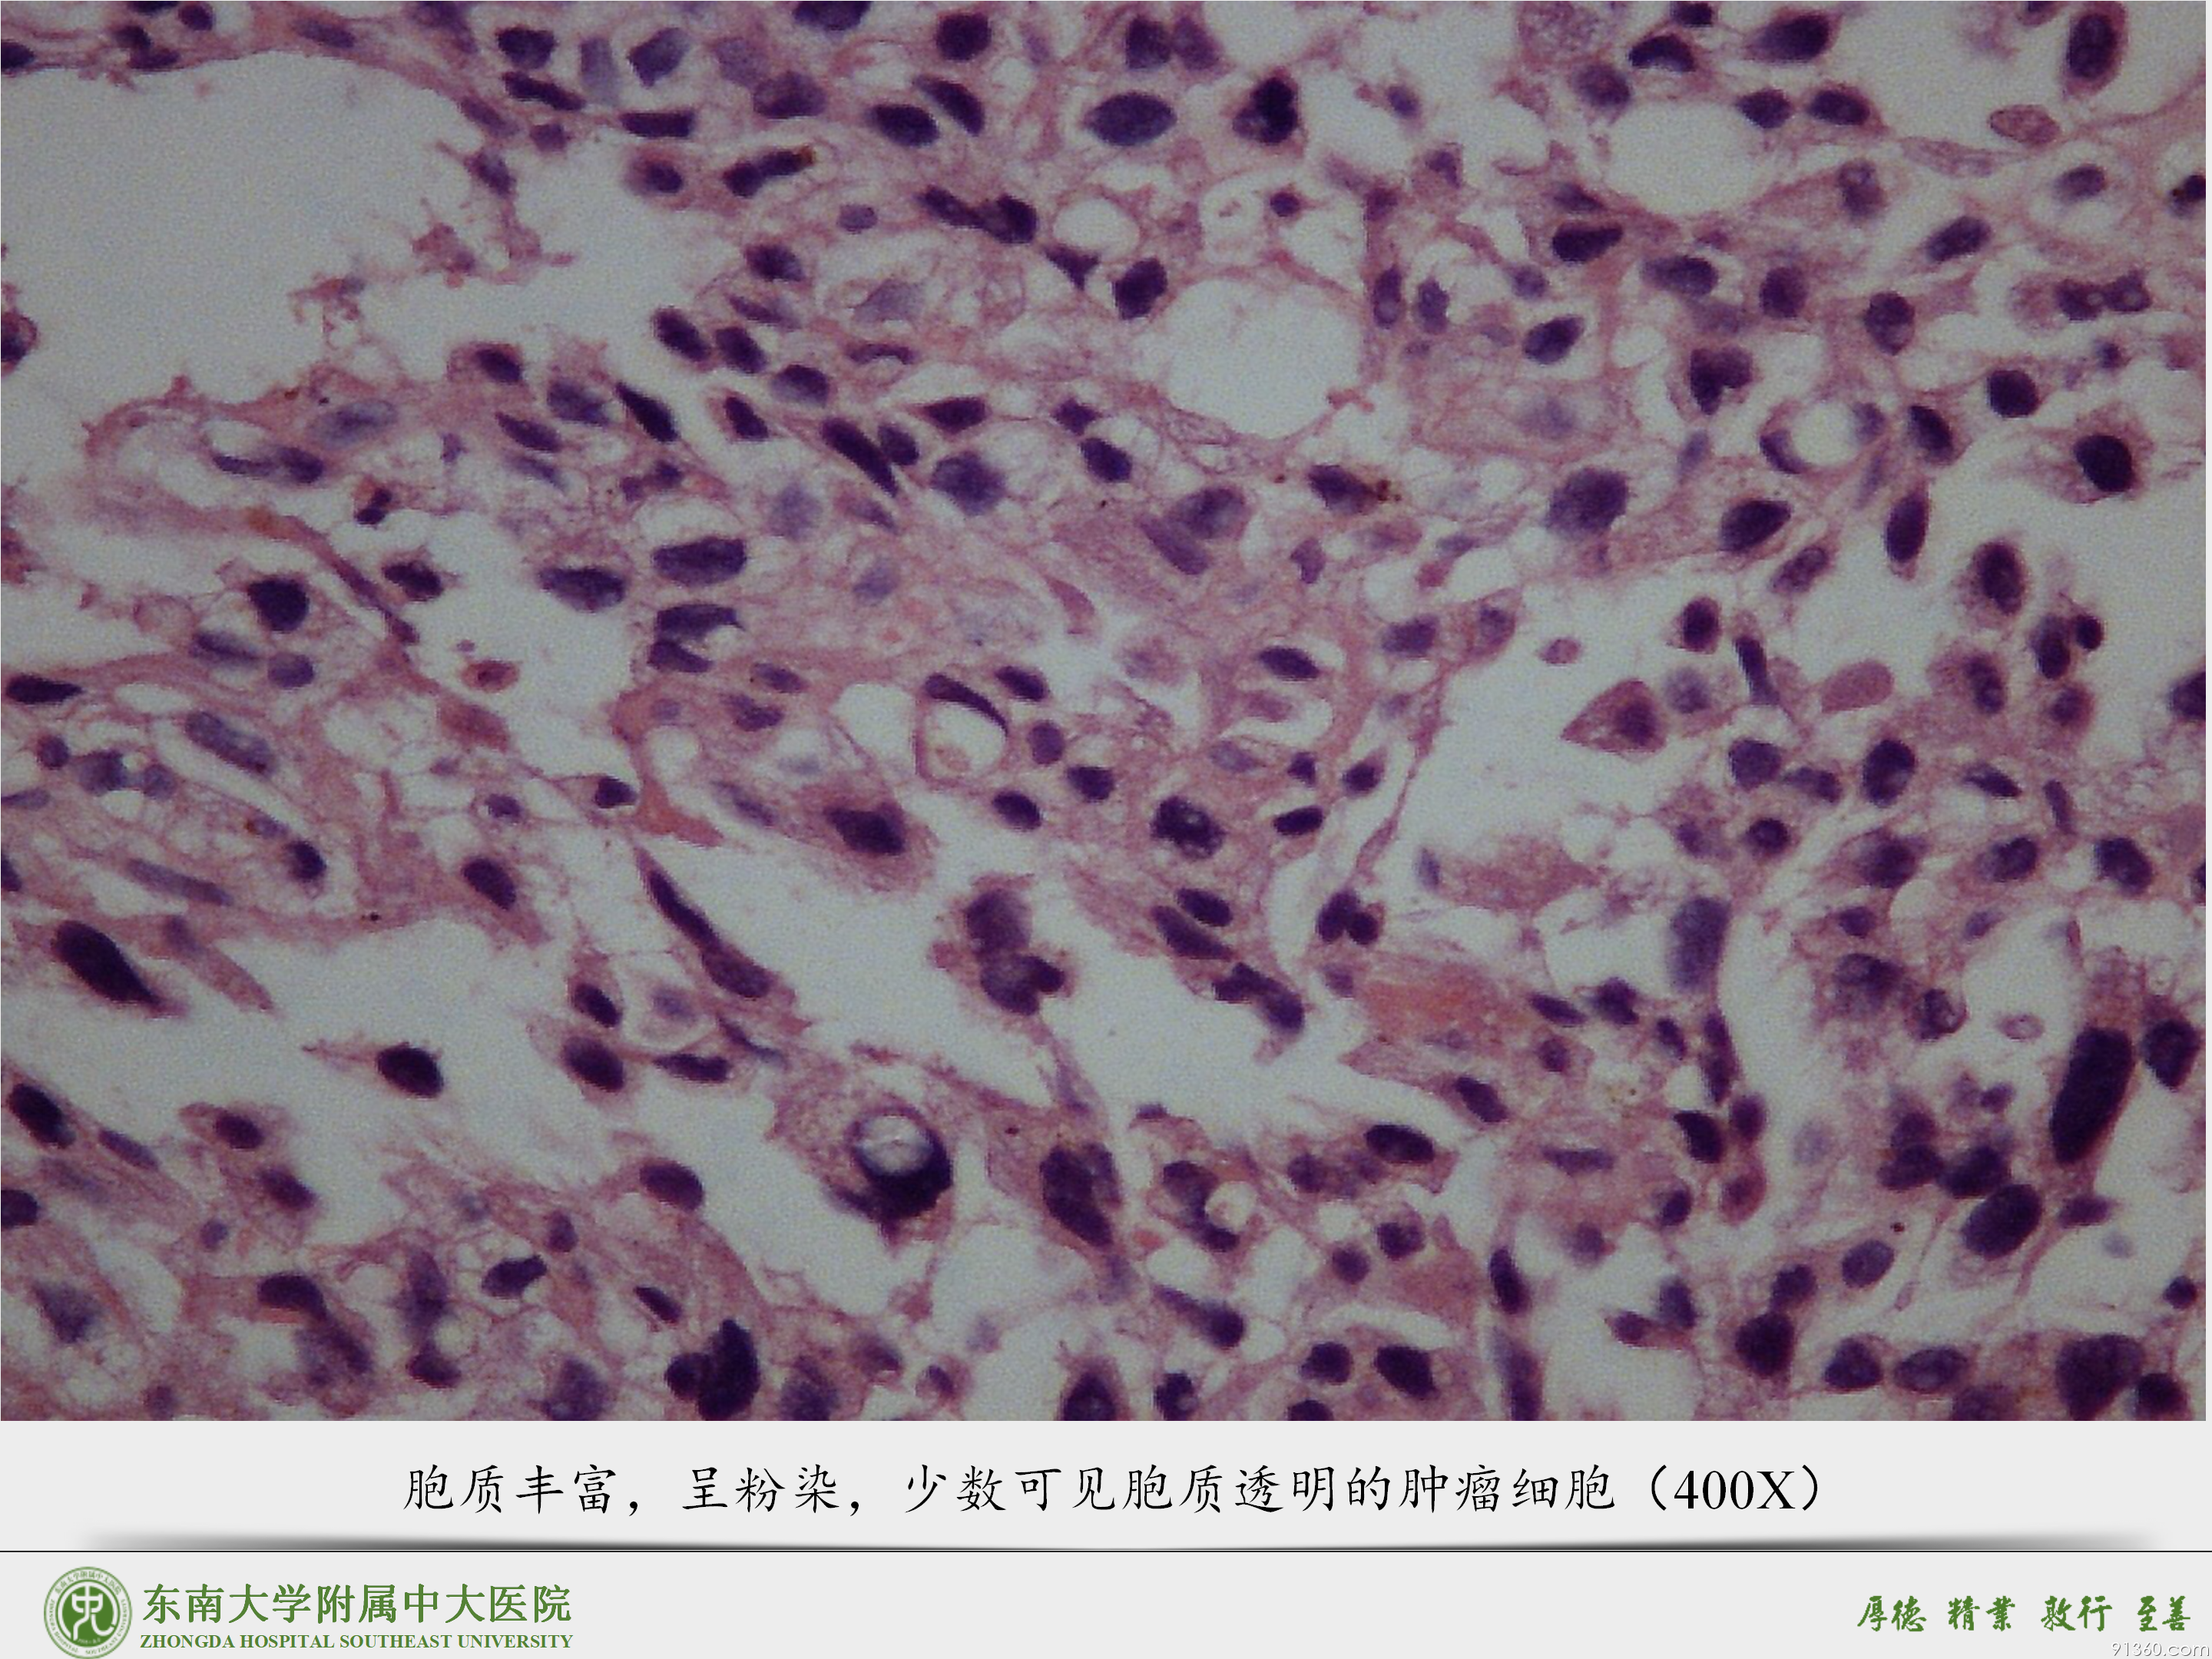 中大病例推送  胎盘部位滋养细胞肿瘤_09.png